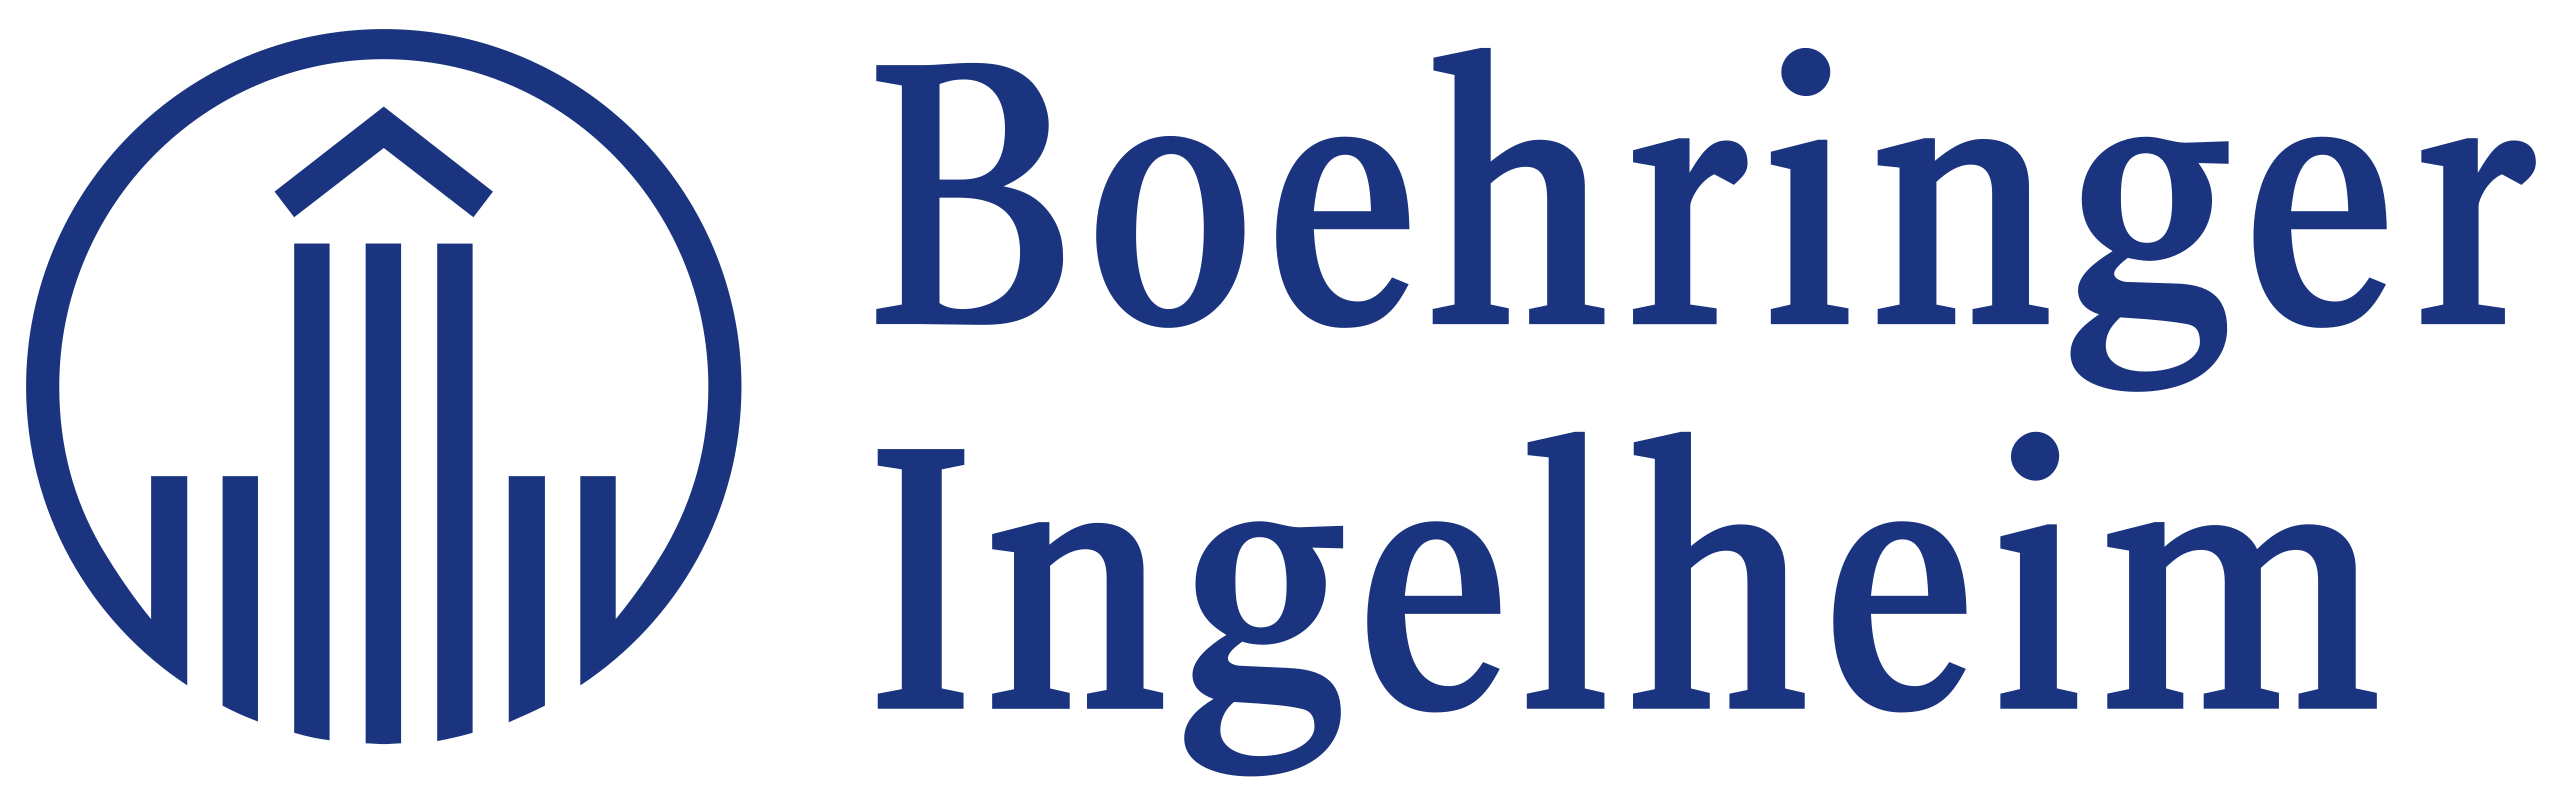 Canine Diabetes Management: Boehringer Ingelheim